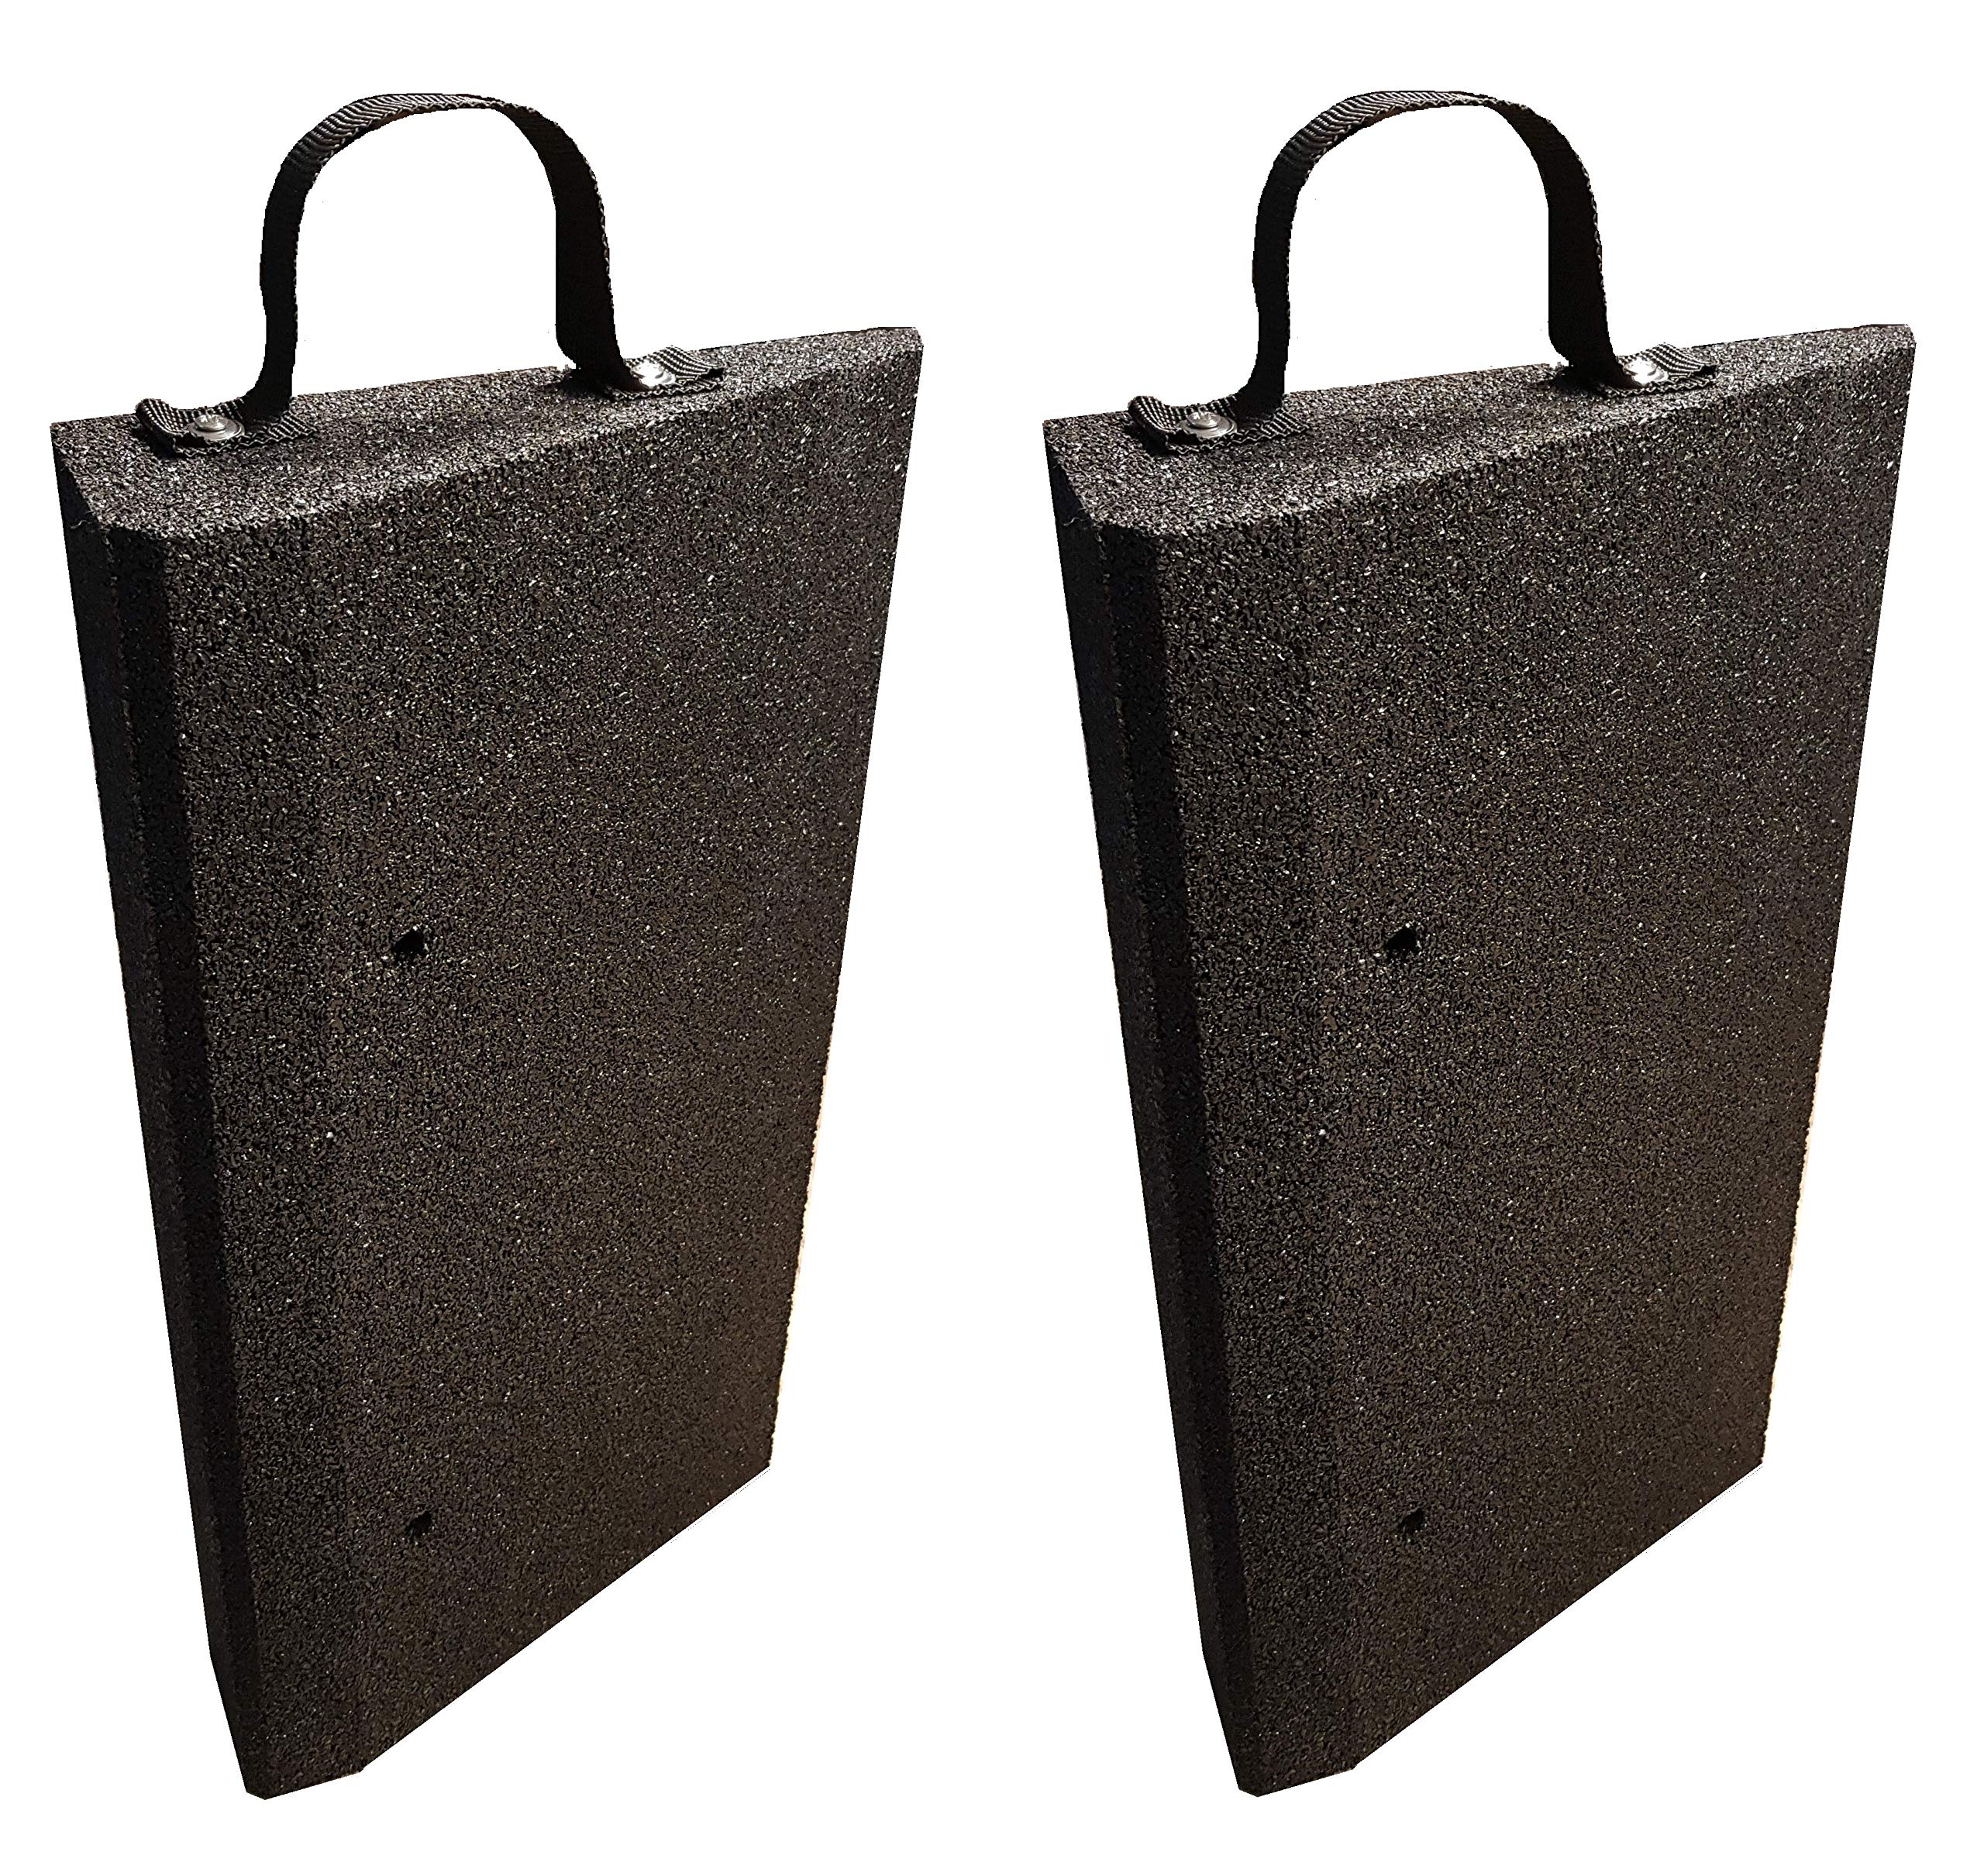 bepco Bordsteinrrampen Set (2 Stück) + Griff-Schlaufe, LxBxH: 50 x 25 x 6 cm aus Gummi (schwarz) Auffahrrampe,Türschwellenrampe, mit eingelagerten Unterlegscheiben zur Befestigung